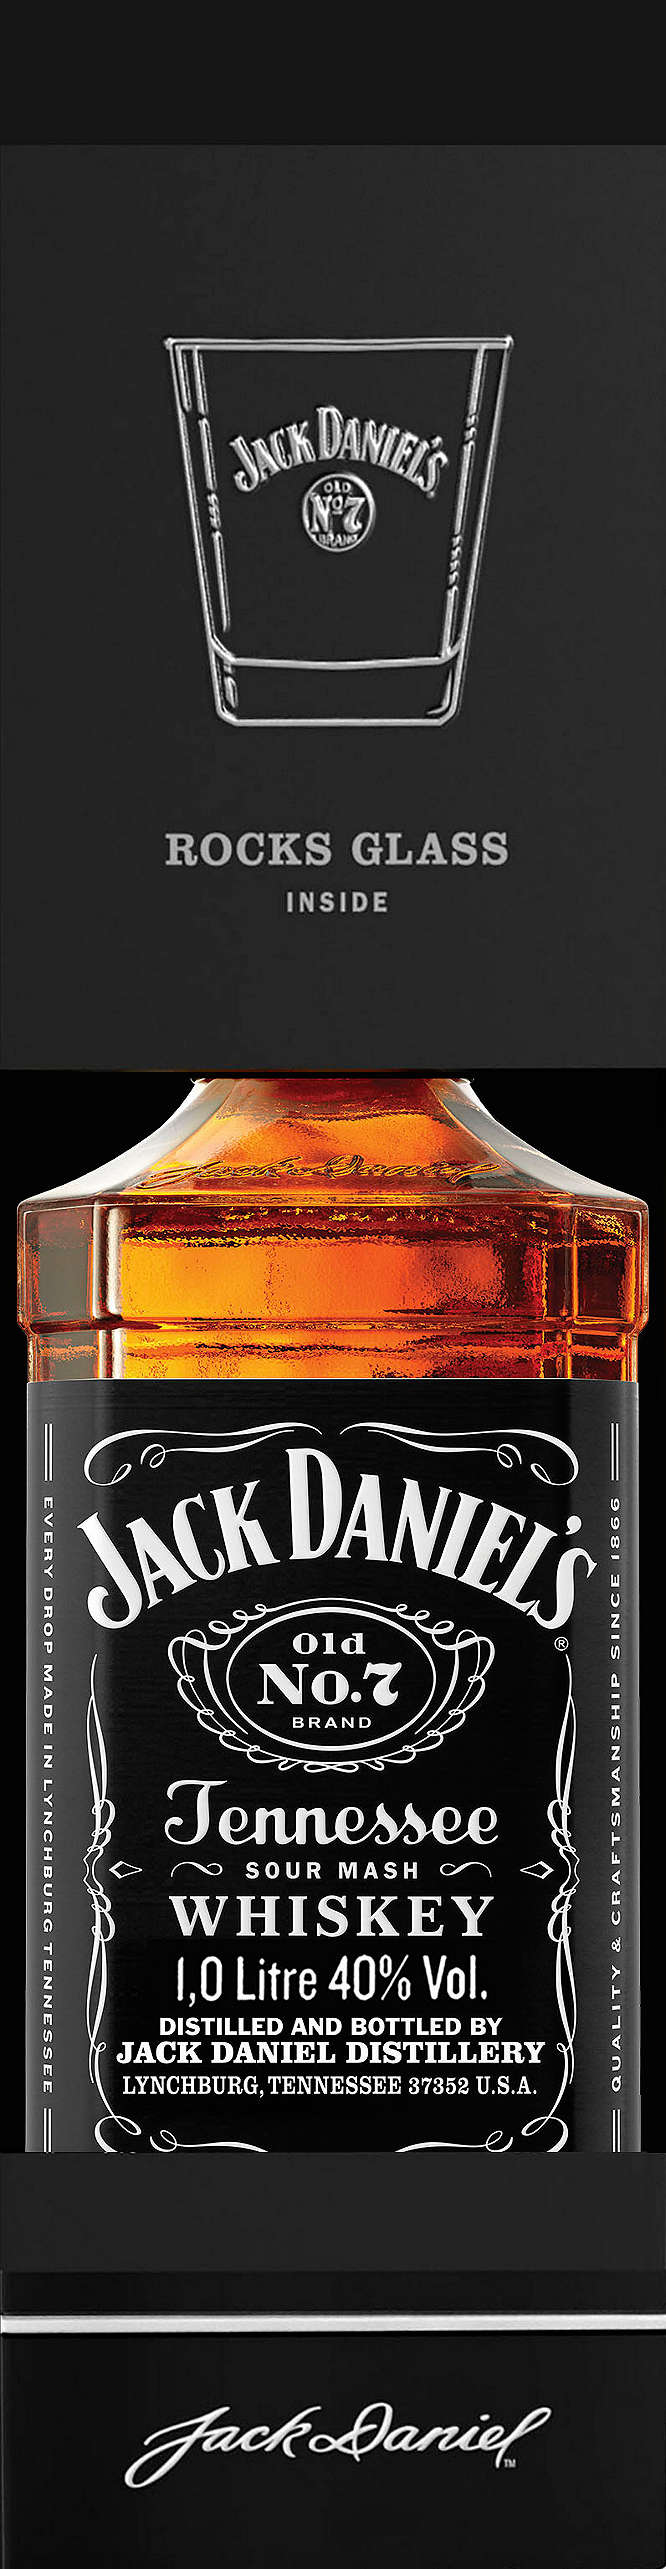 Изображение за продукта Jack Daniels Tennessee yиски промопакет